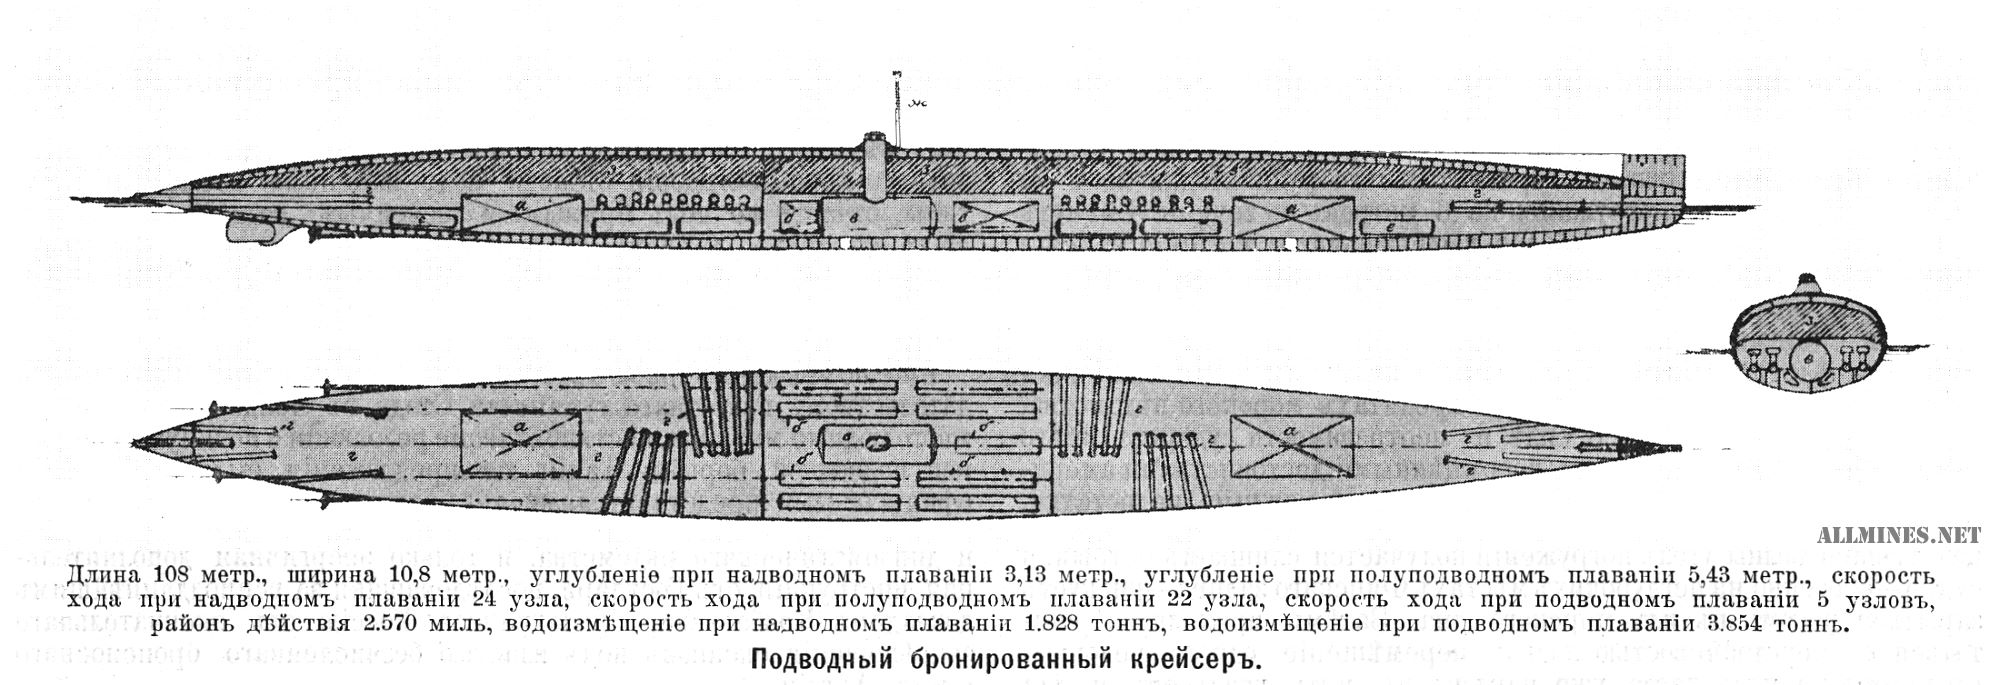 Проект подводного крейсера Колбасьева (прообраз будущих 671, 667АТ и 971 проектов)